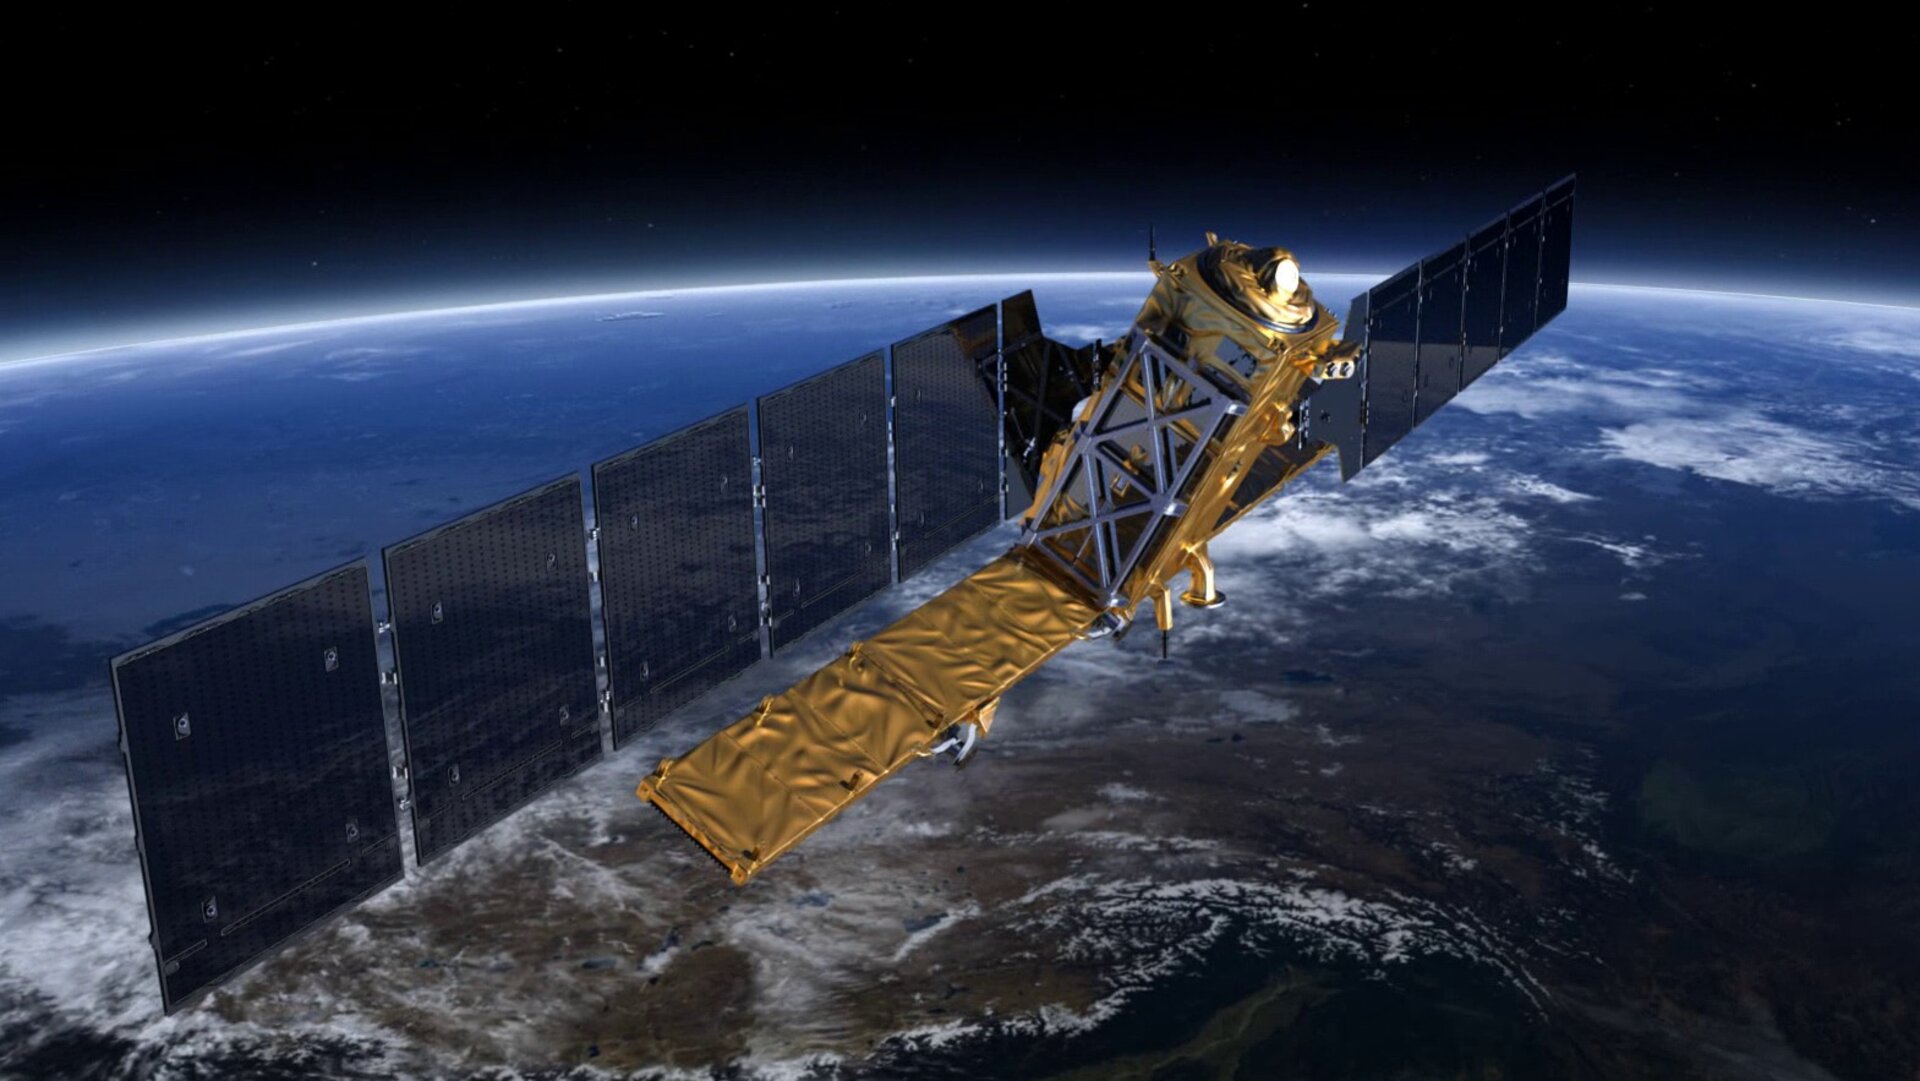 Εκτοξεύθηκε με επιτυχία ο νέος ευρωπαϊκός δορυφόρος Sentinel-6 για τη χαρτογράφηση των ωκεανών